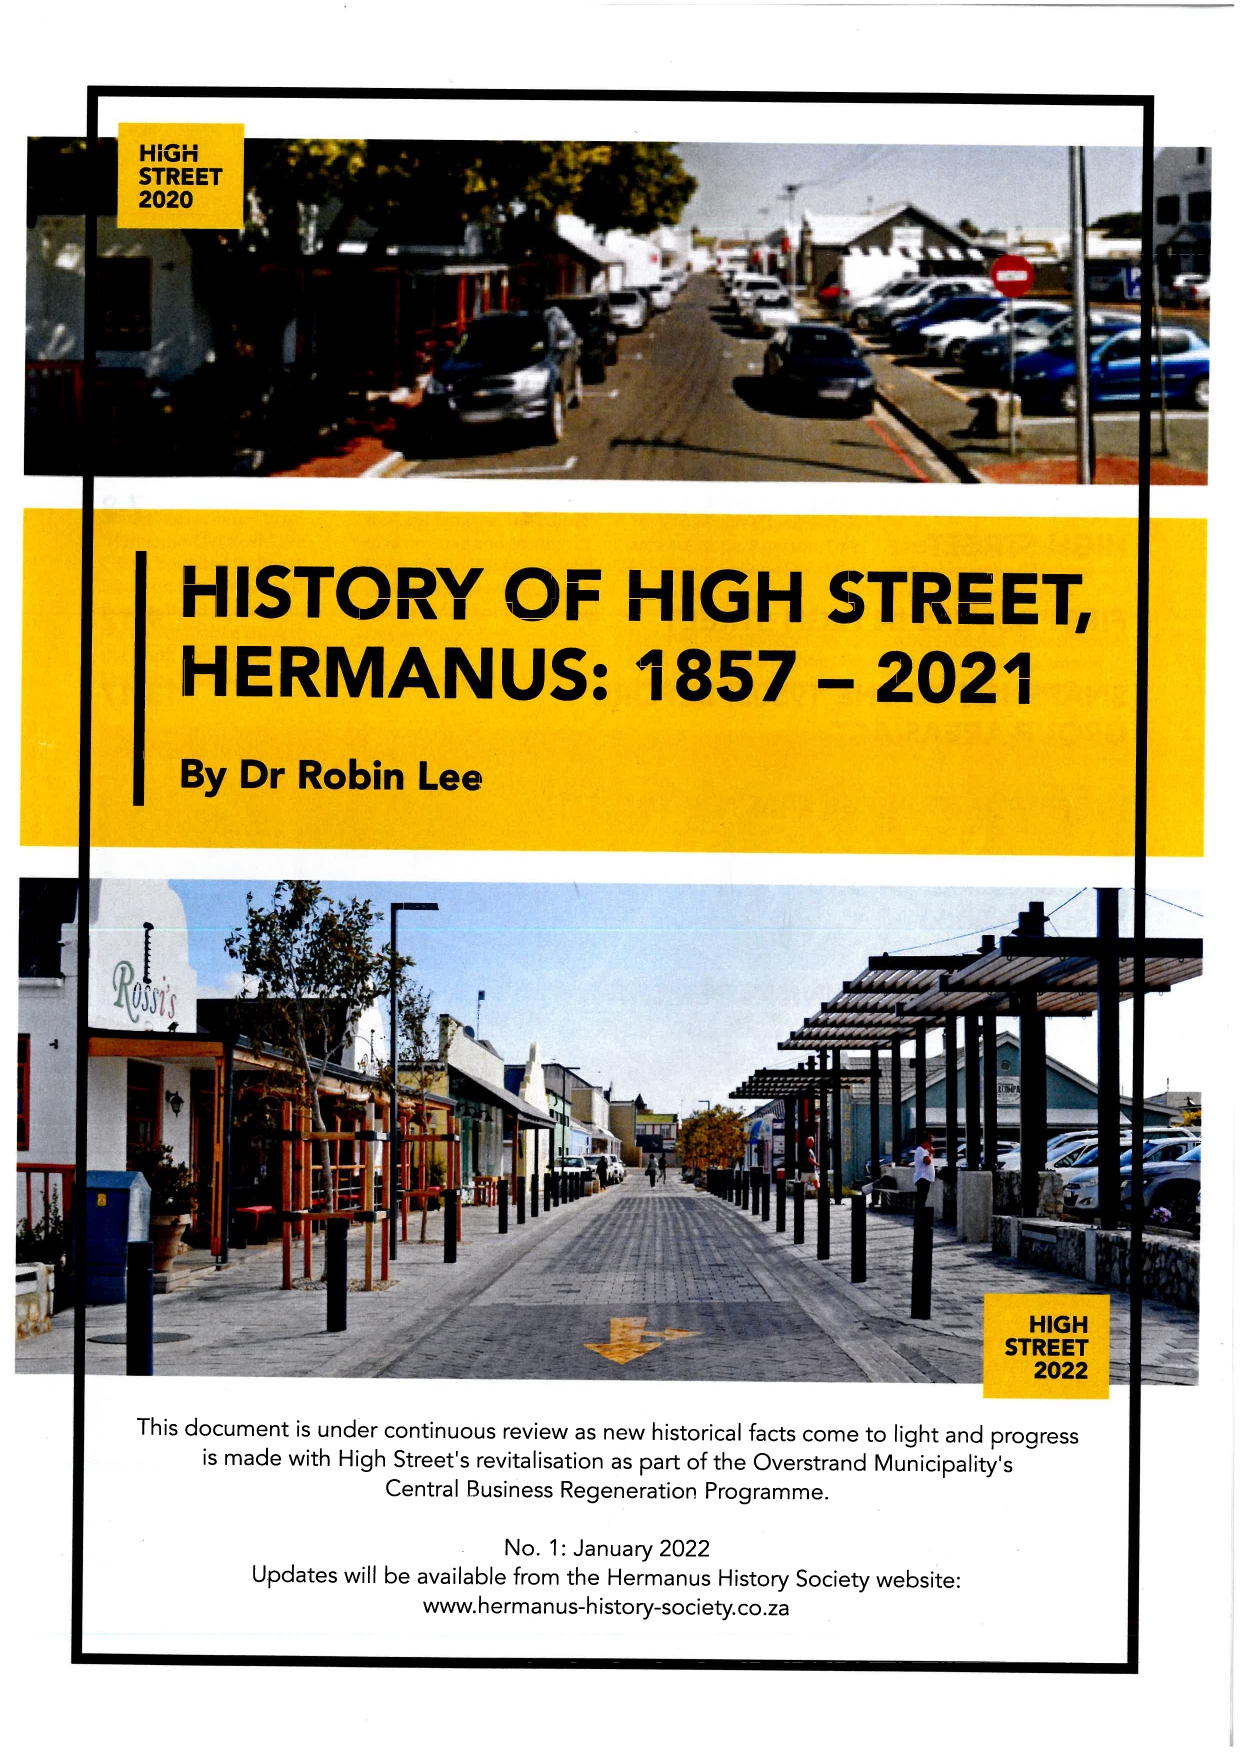 History of High Street, Hermanus: 1857 - 2021